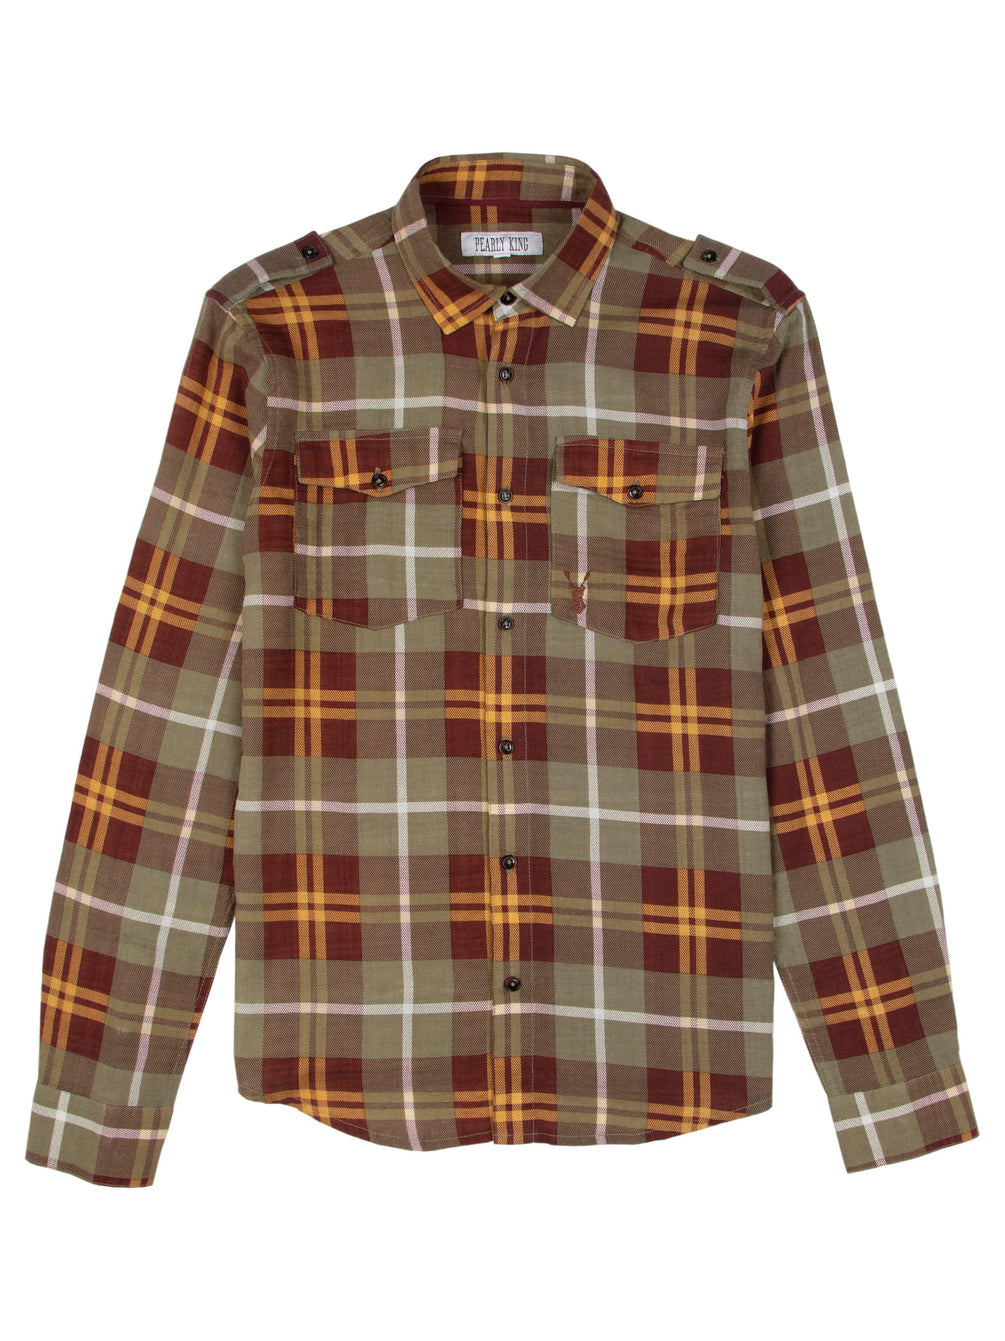 Pearly King - Shade LS Shirt - Khaki/Brown